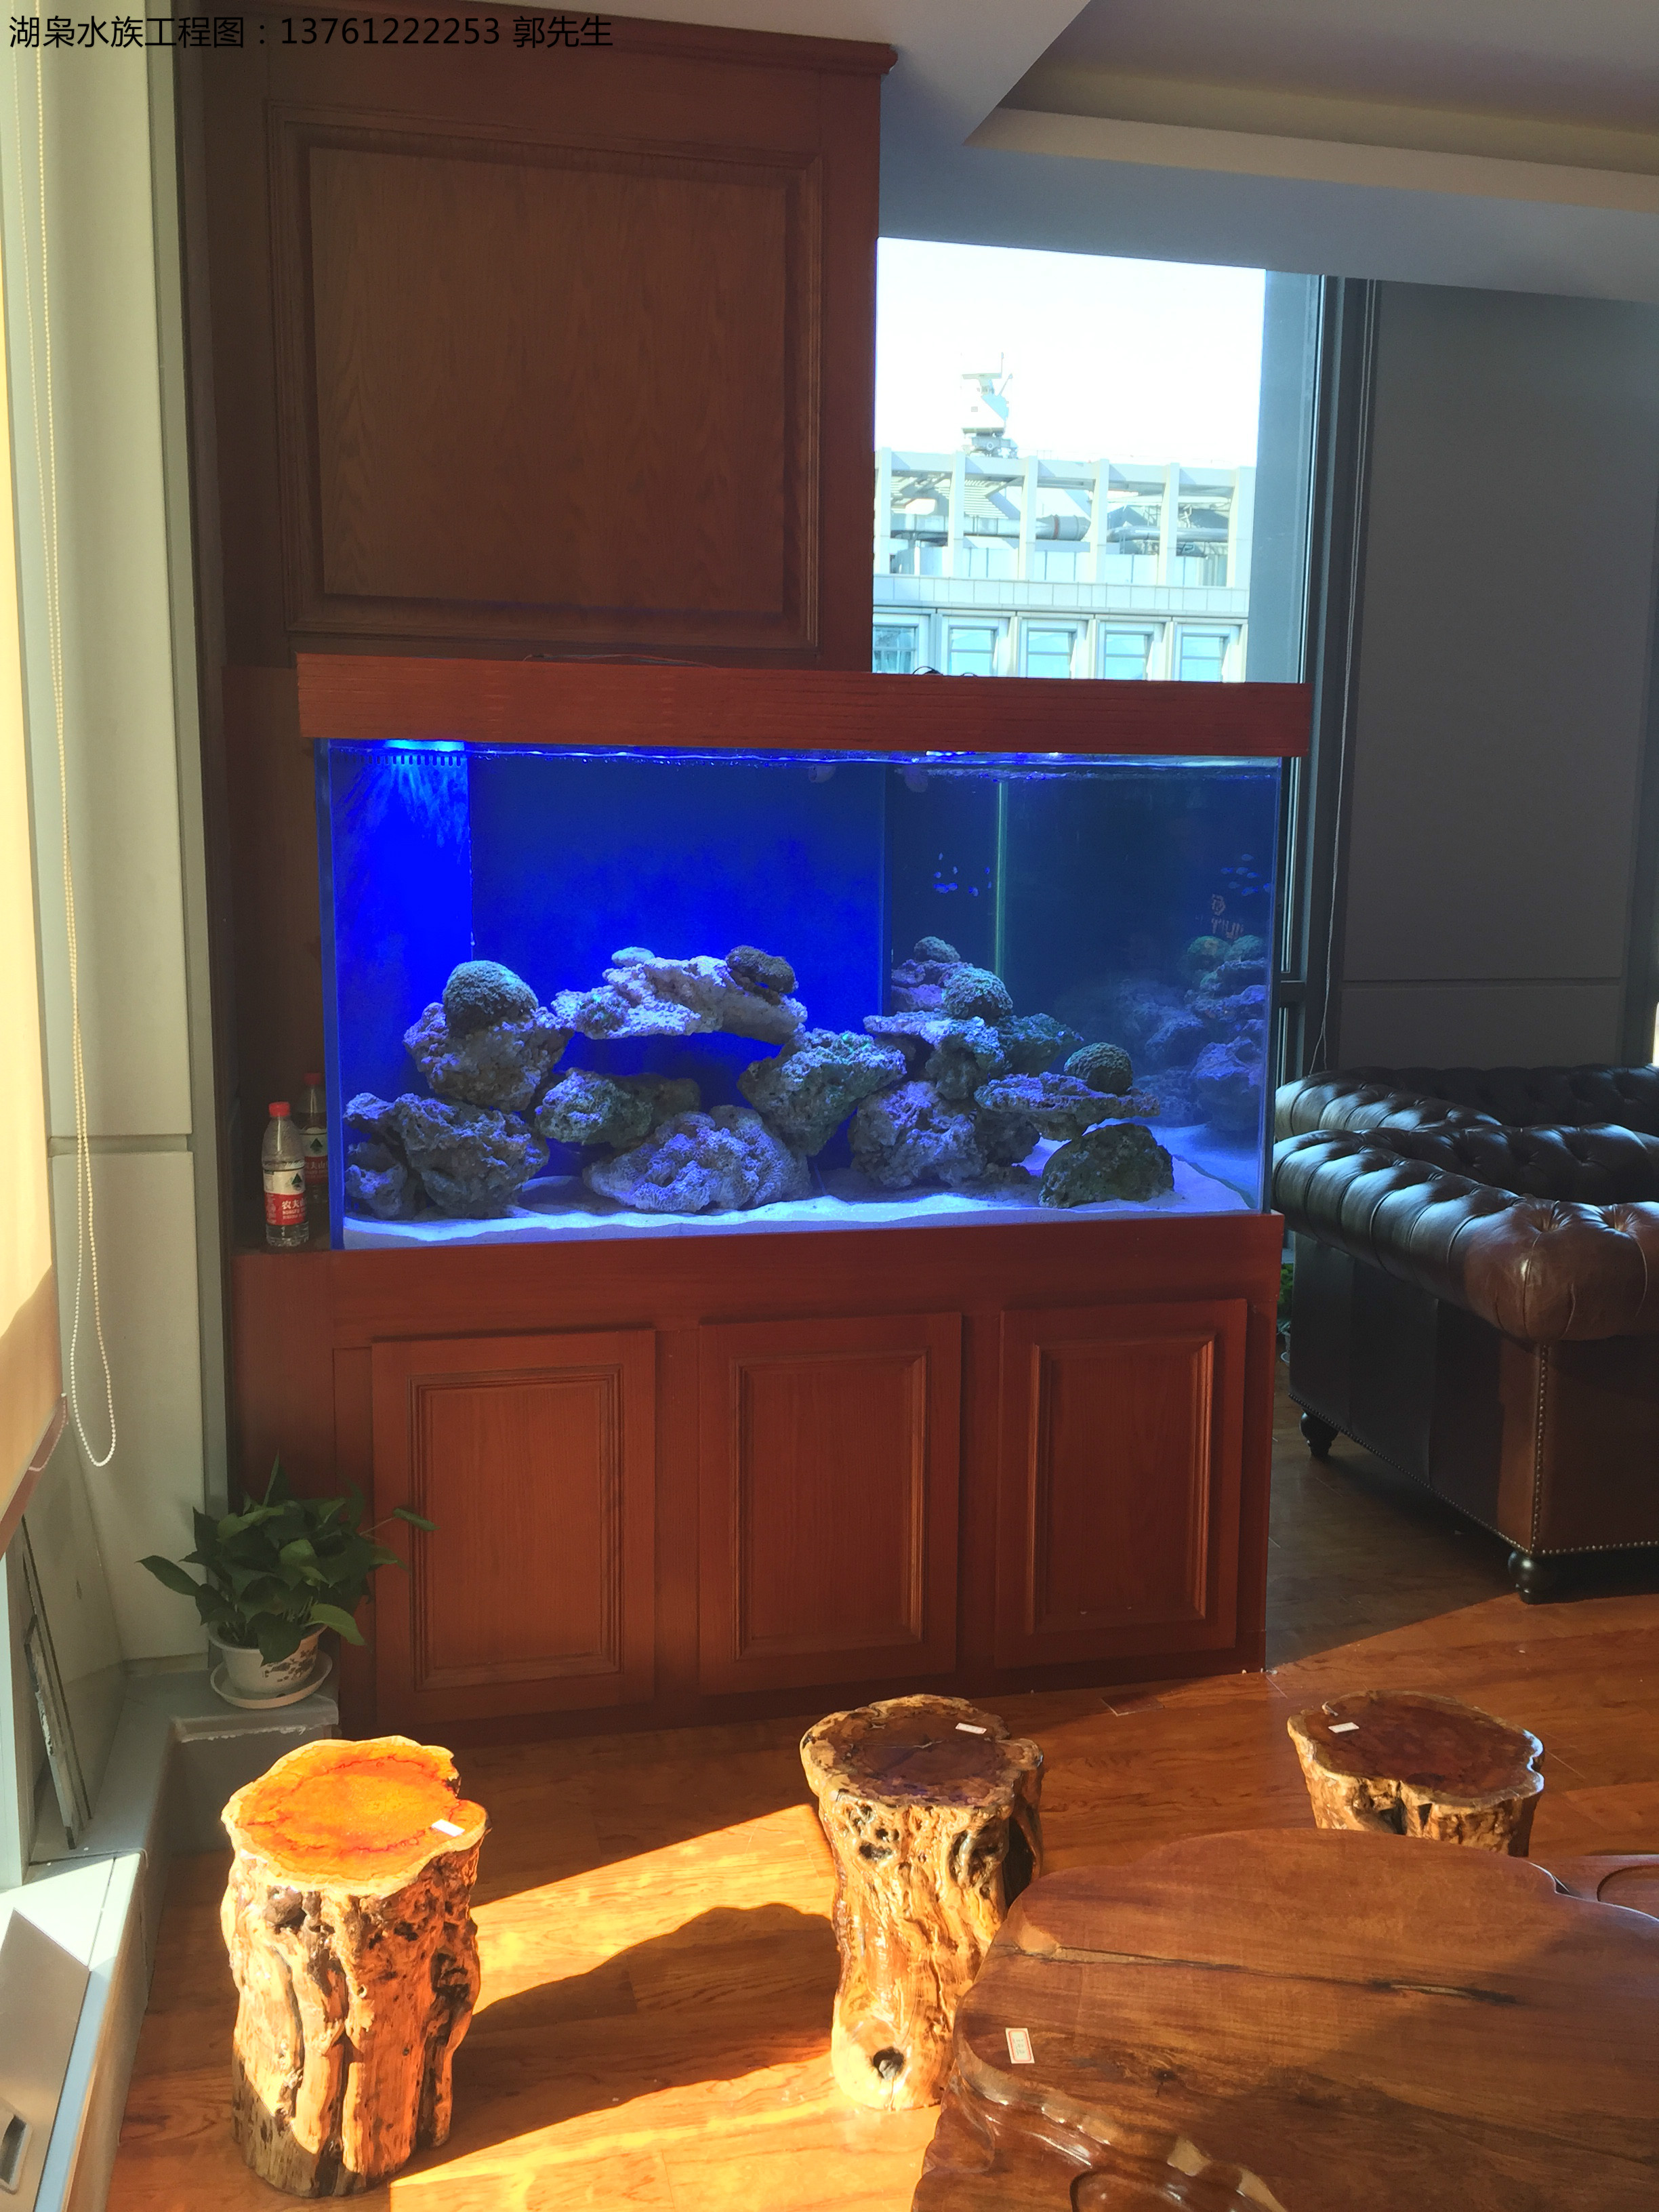 生态观赏鱼缸  厂家定制生态观赏鱼缸  上海水族生态观赏鱼缸图片